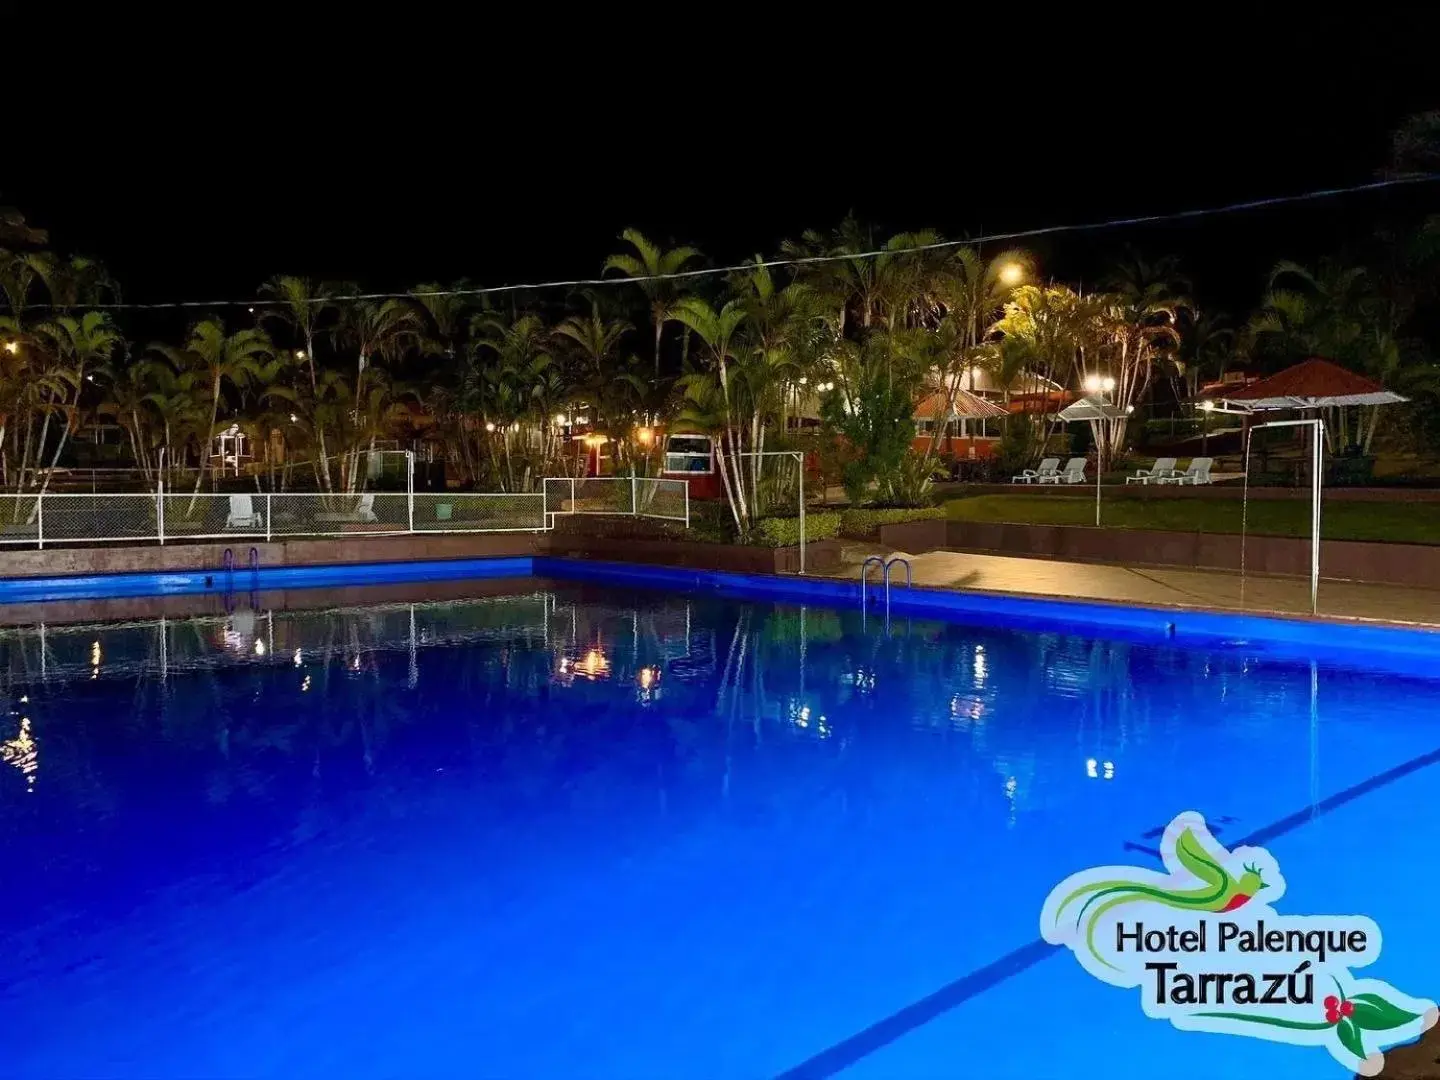 Swimming Pool in Hotel Palenque Tarrazu